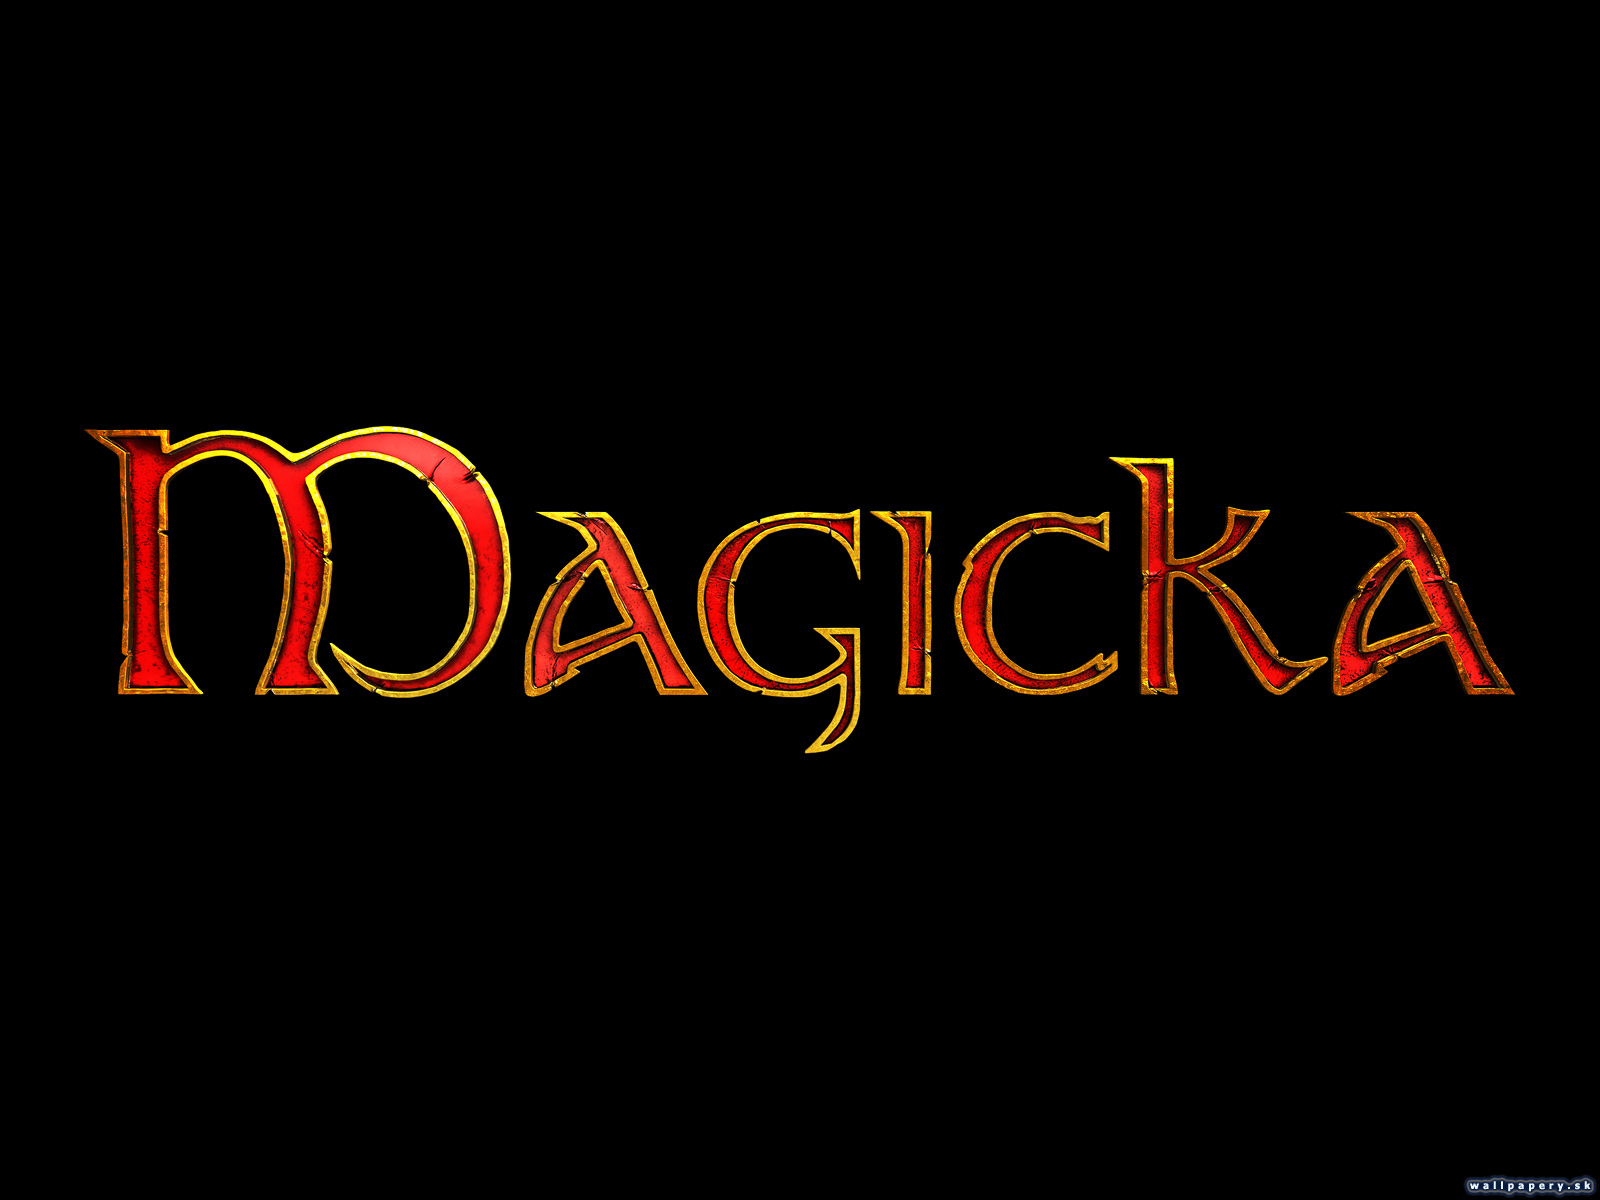 Magicka - wallpaper 15